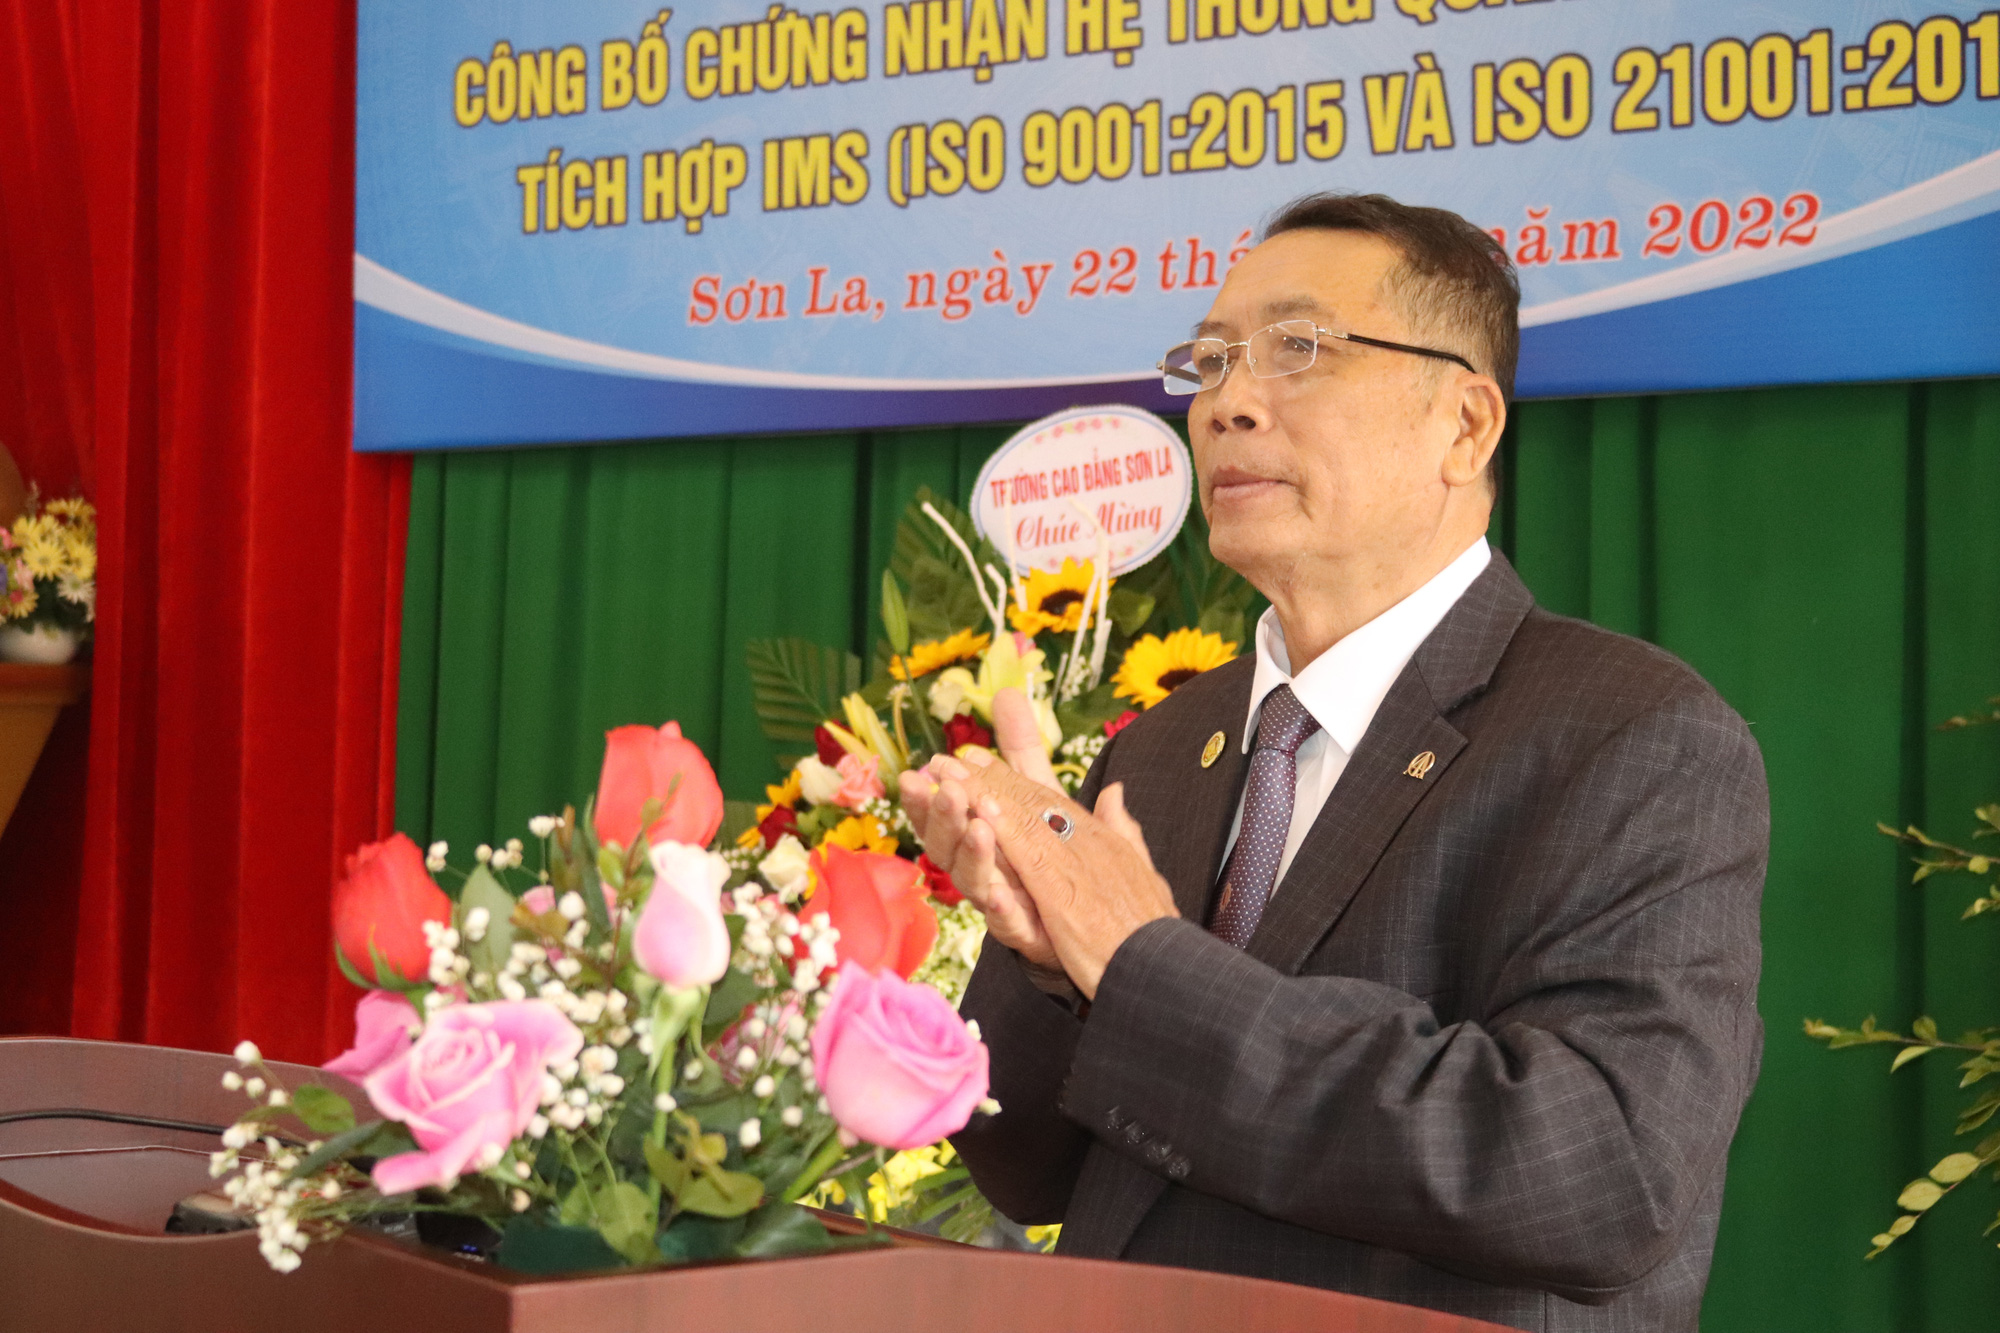 Sở GDĐT Sơn La - đơn vị đầu tiên ở Việt Nam được cấp chứng nhận Hệ thống quản lý chất lượng tích hợp IMS - Ảnh 6.